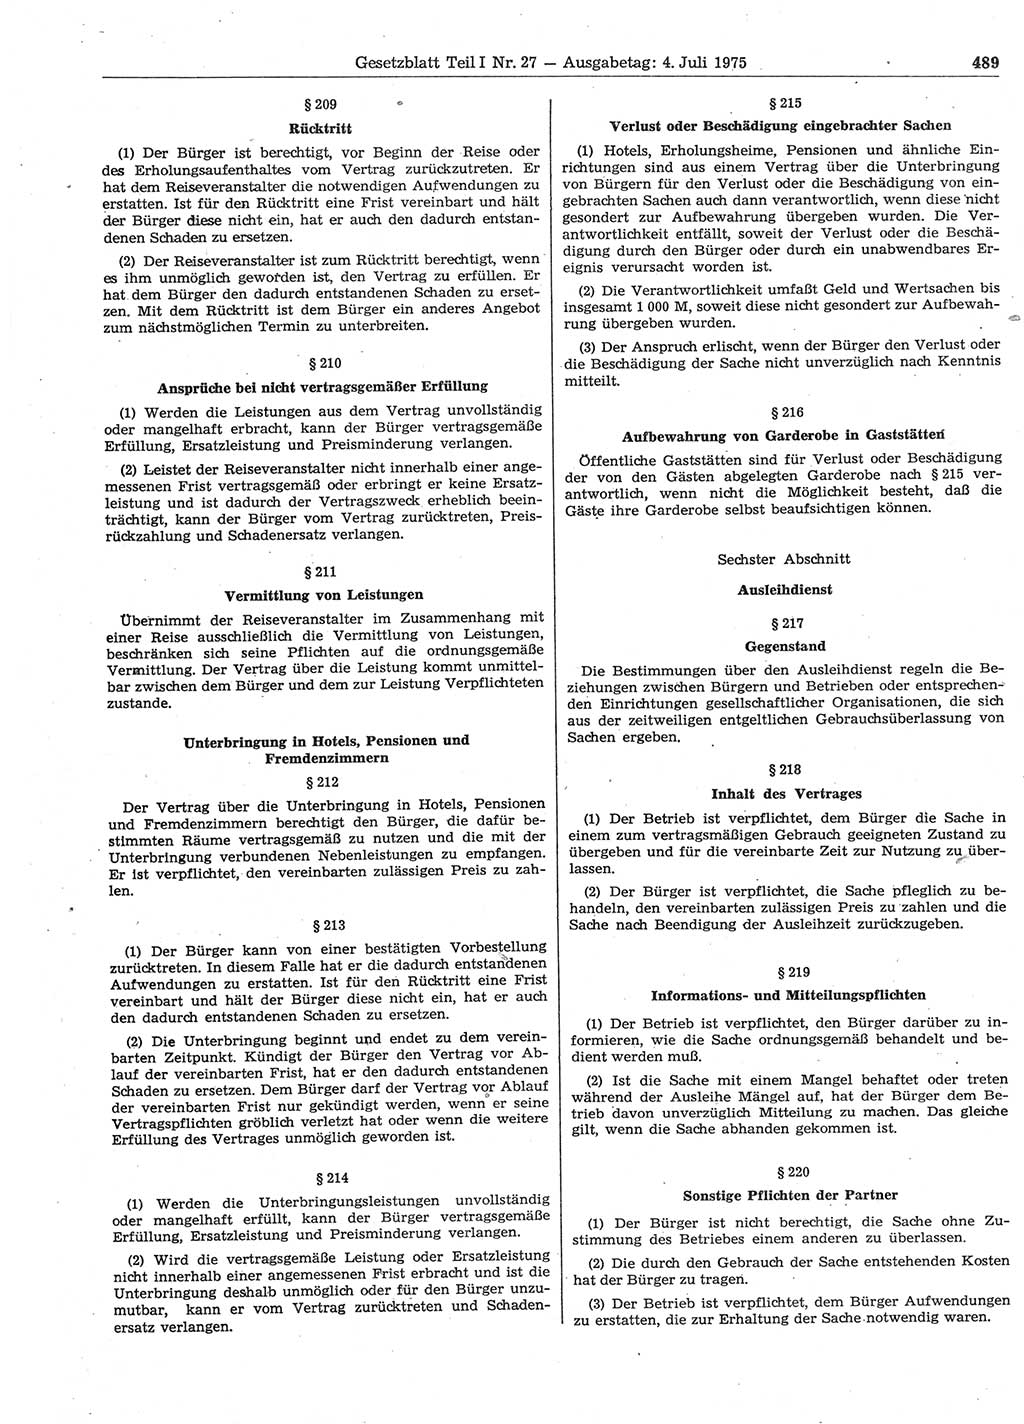 Gesetzblatt (GBl.) der Deutschen Demokratischen Republik (DDR) Teil Ⅰ 1975, Seite 489 (GBl. DDR Ⅰ 1975, S. 489)